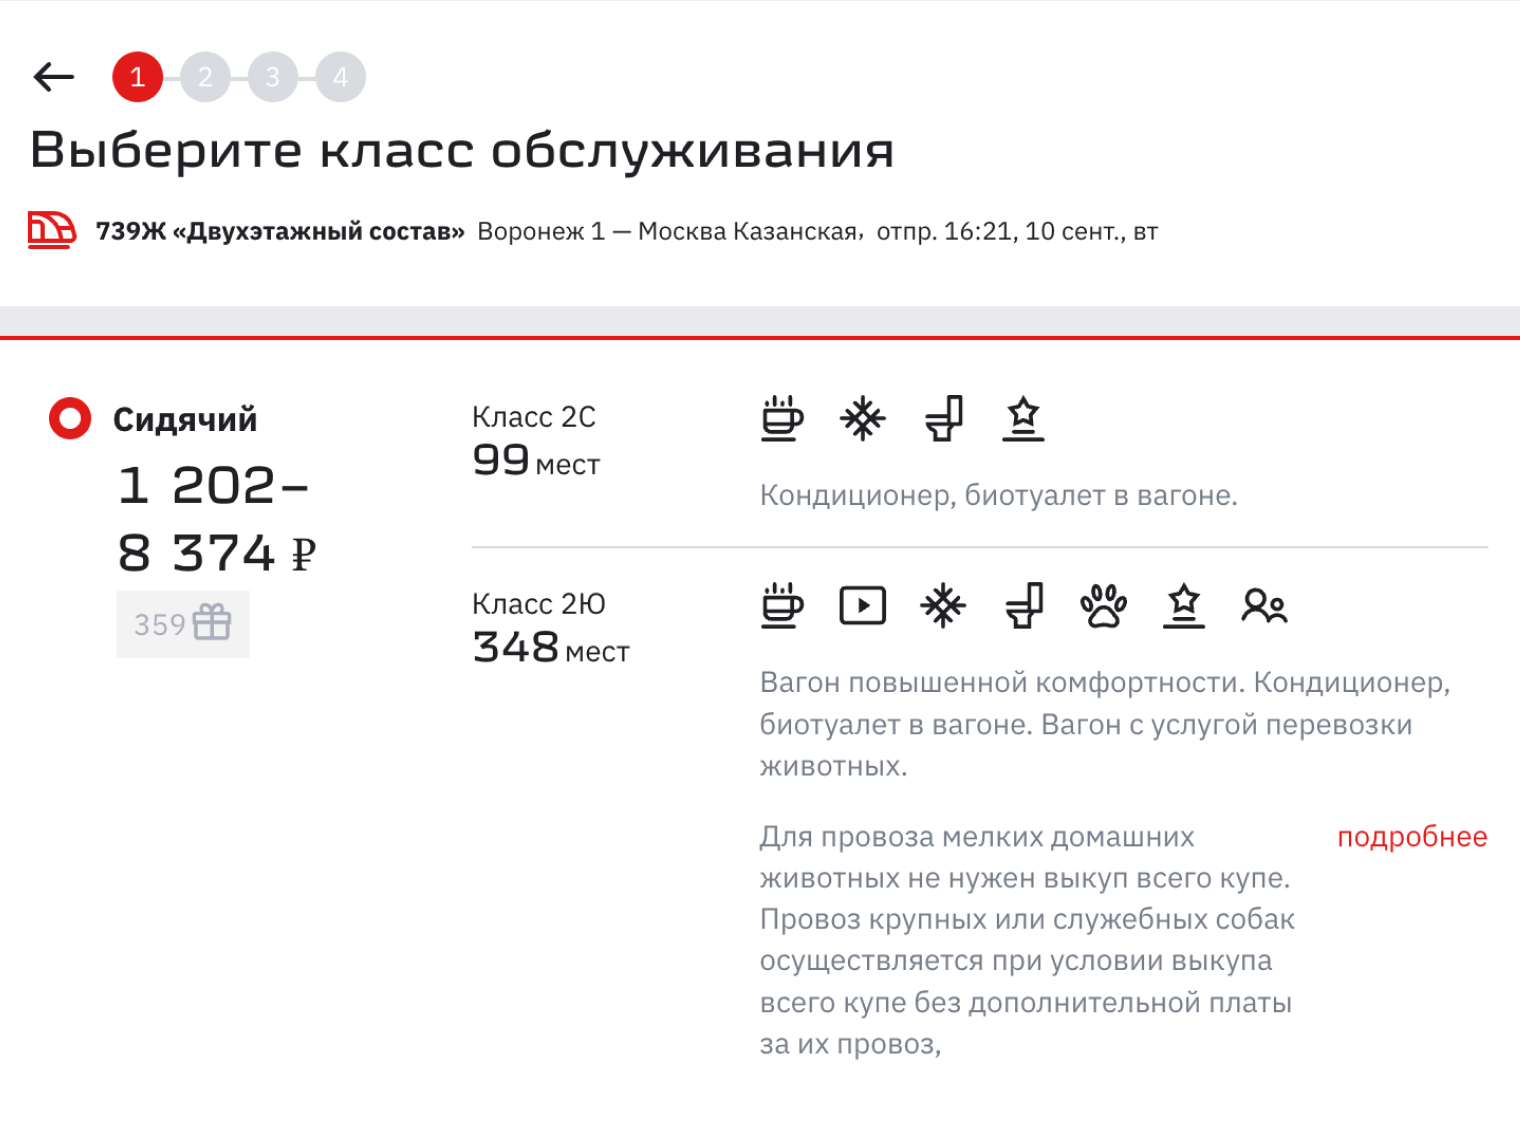 Примерно за эту же сумму можно доехать из Воронежа в Москву на скоростном поезде. Источник: rzd.ru